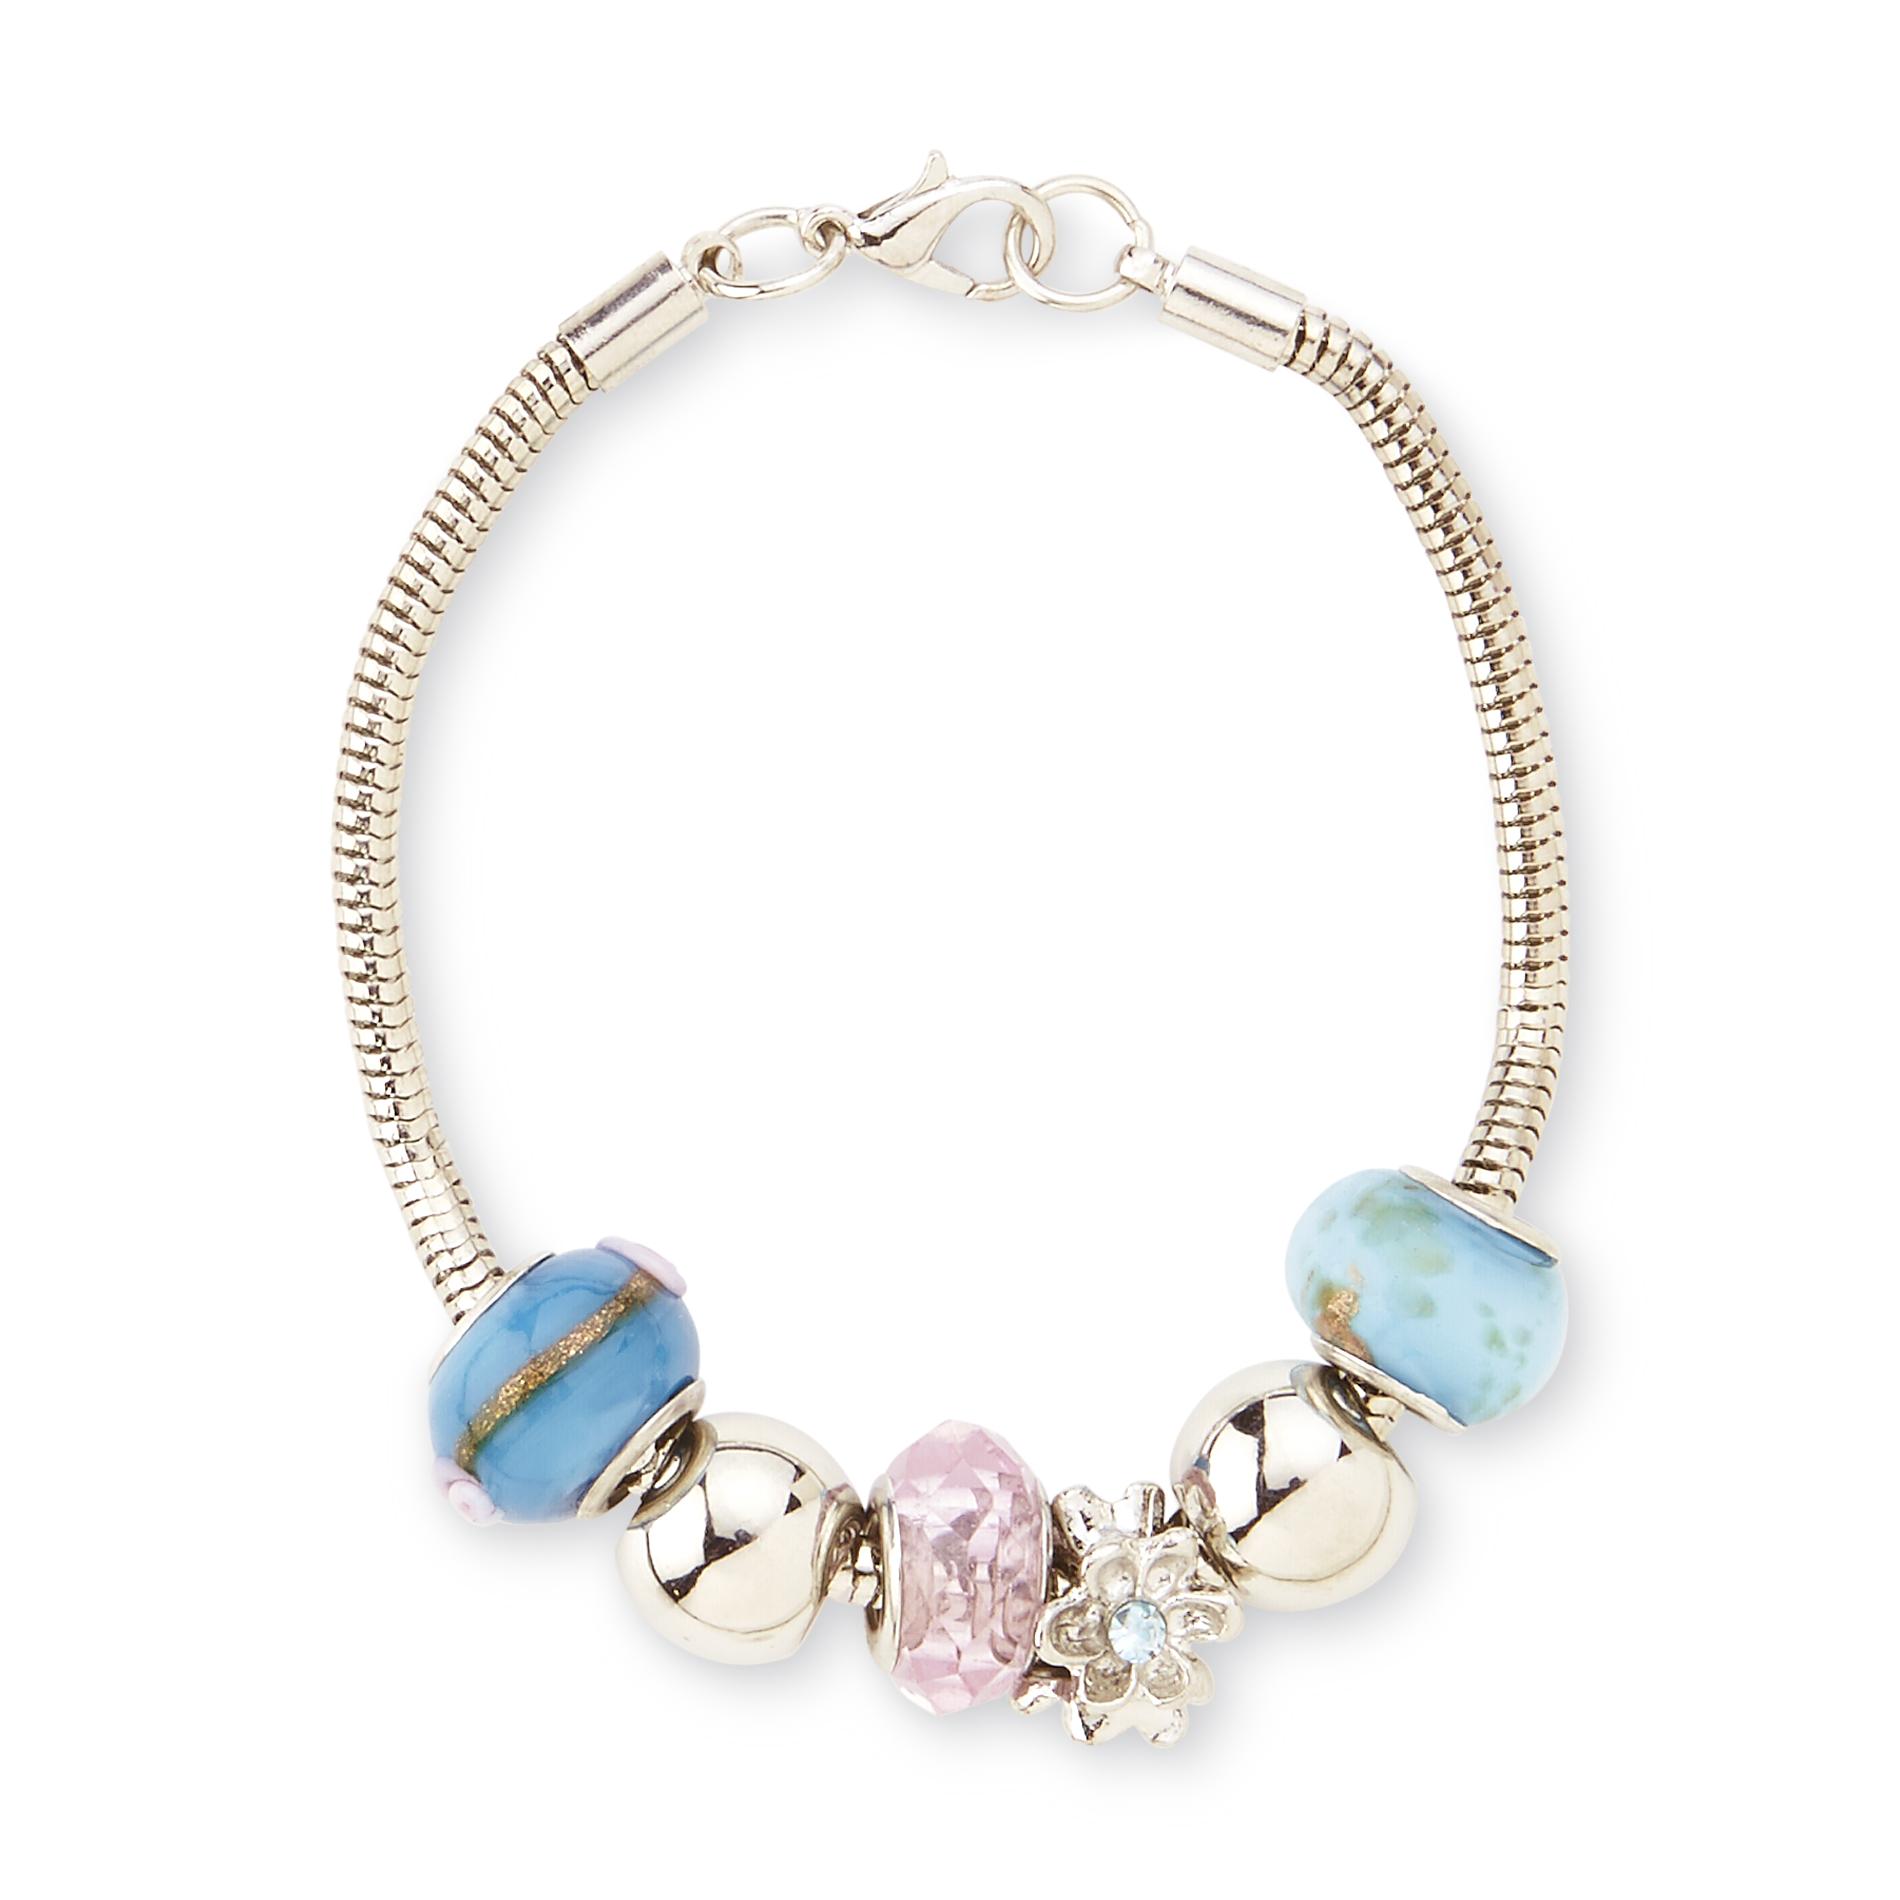 Jaclyn Smith Women's Silvertone Turquoise Swirl Charm Bracelet & Gift Box